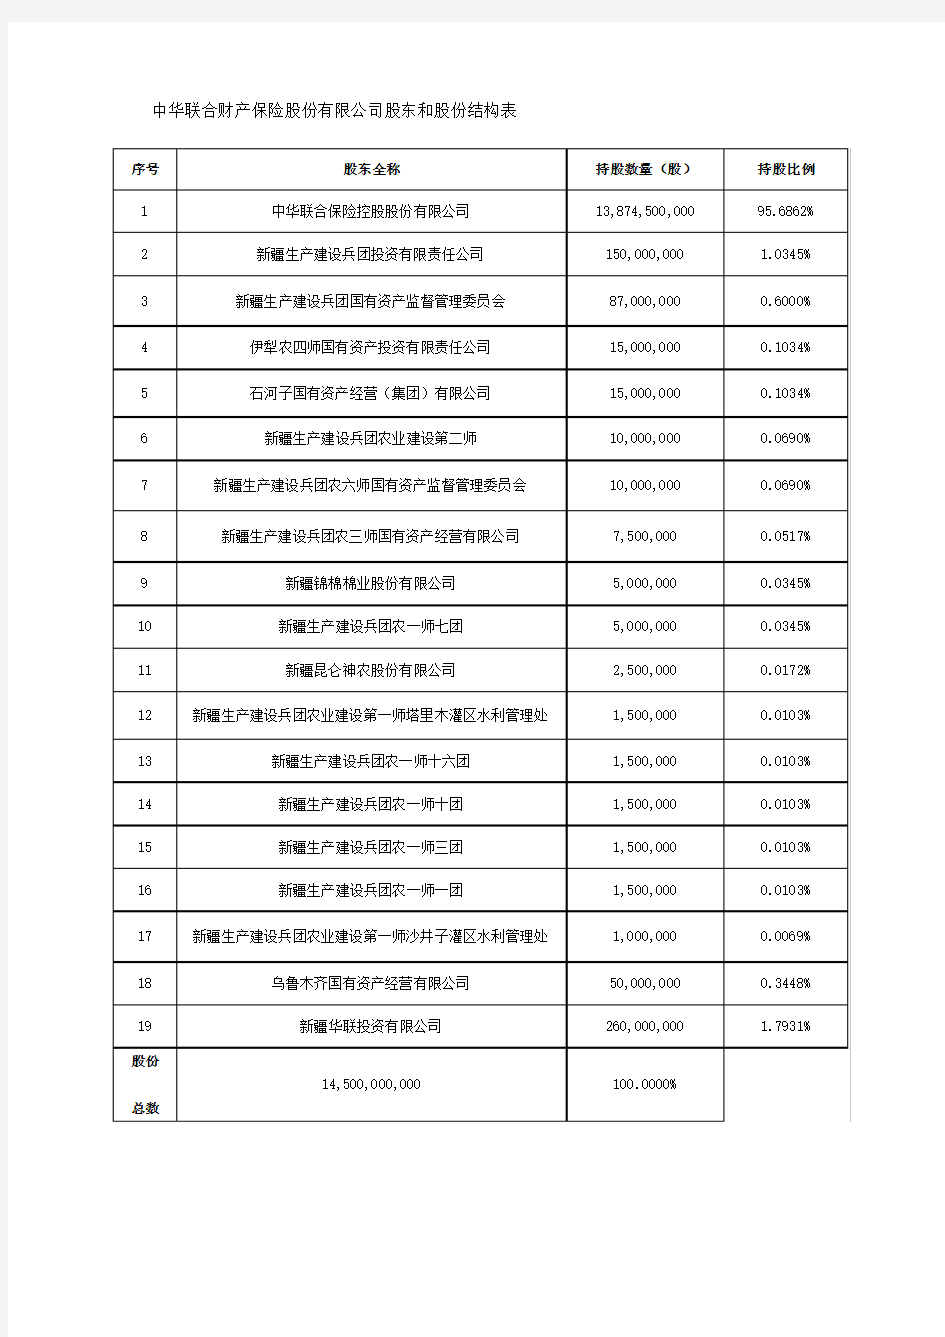 中华联合财产保险股份有限公司股东和股份结构表